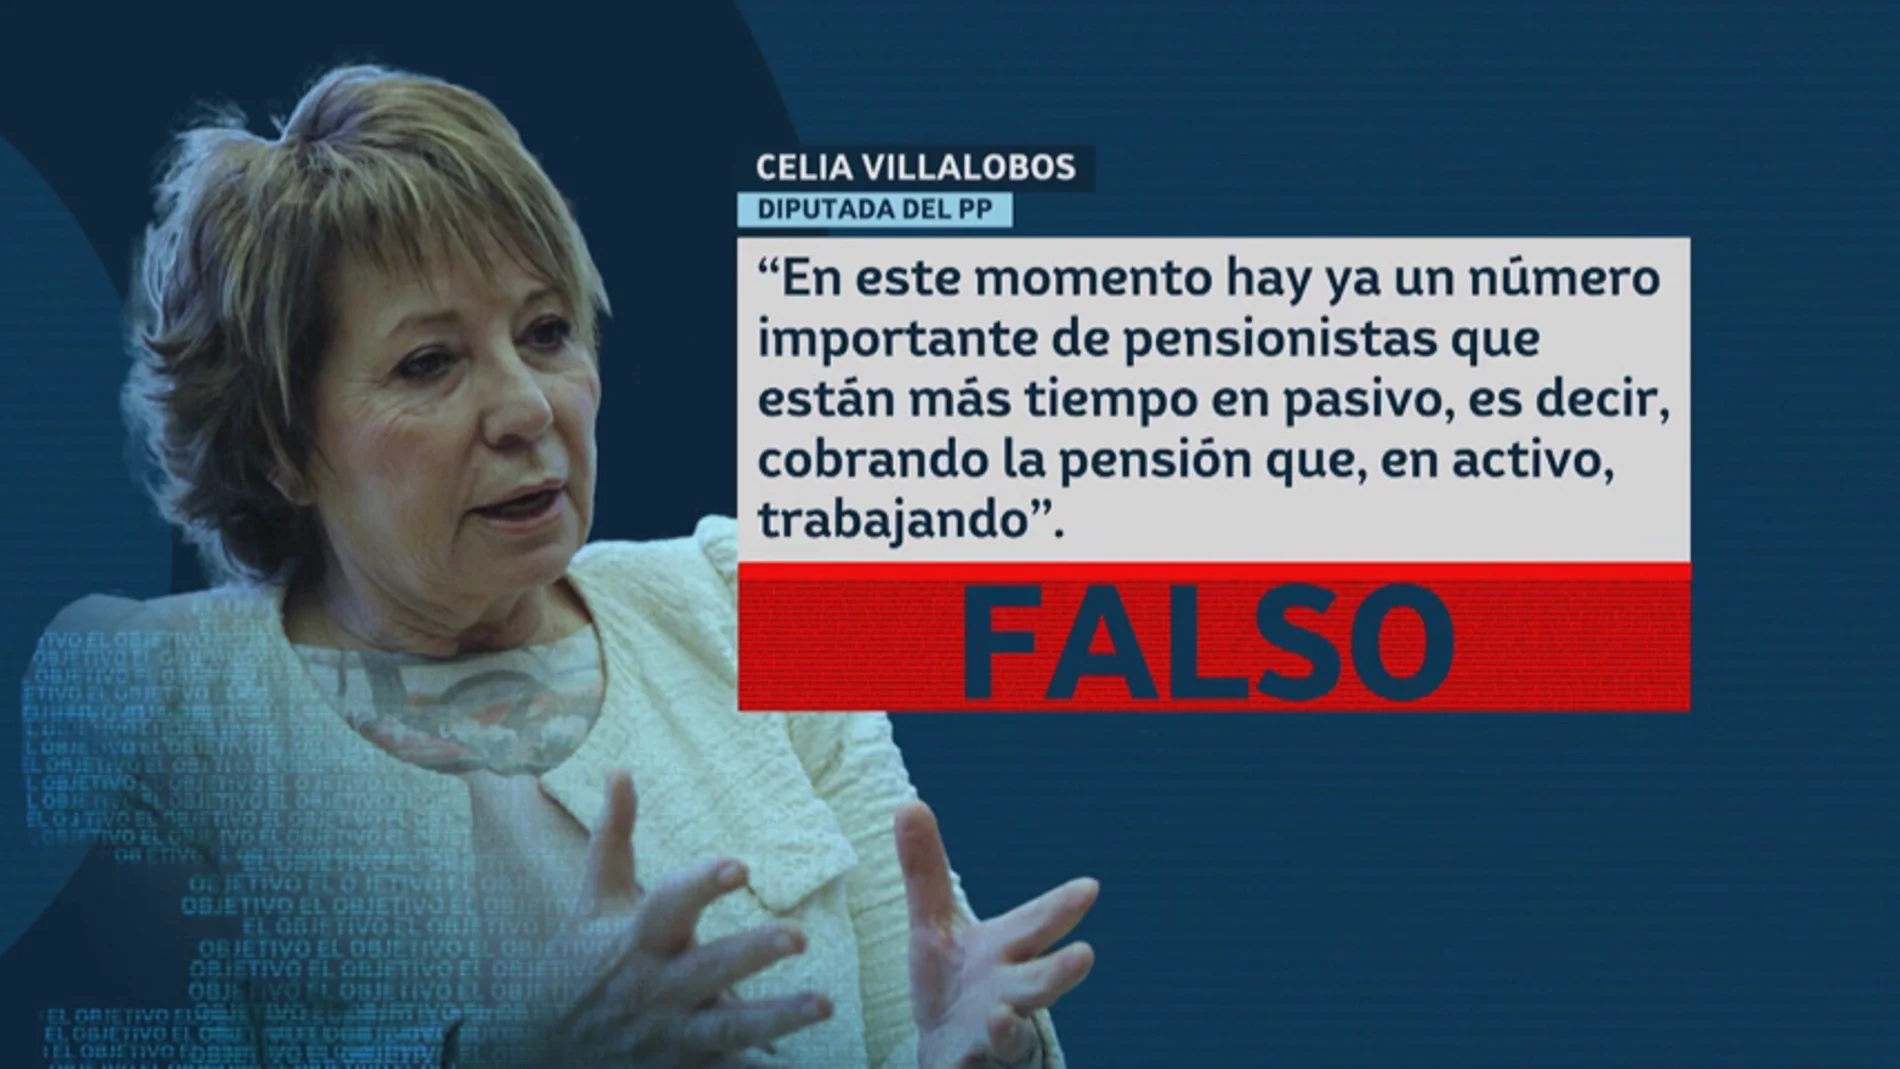 El dato falso de Celia Villalobos sobre los pensionistas